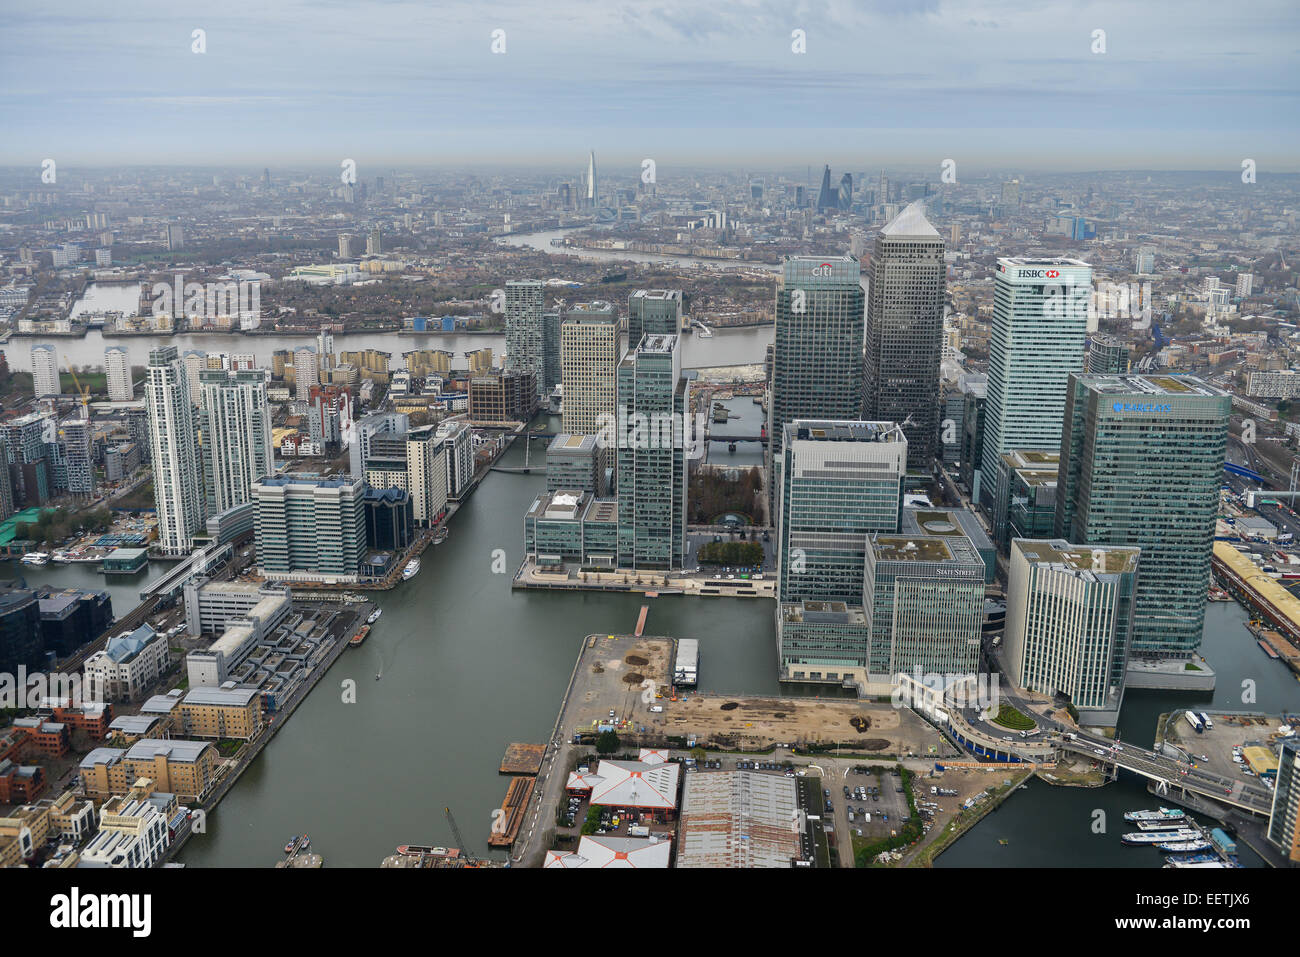 Una veduta aerea del distretto finanziario di Canary Wharf a Londra con la città visibile in background Foto Stock